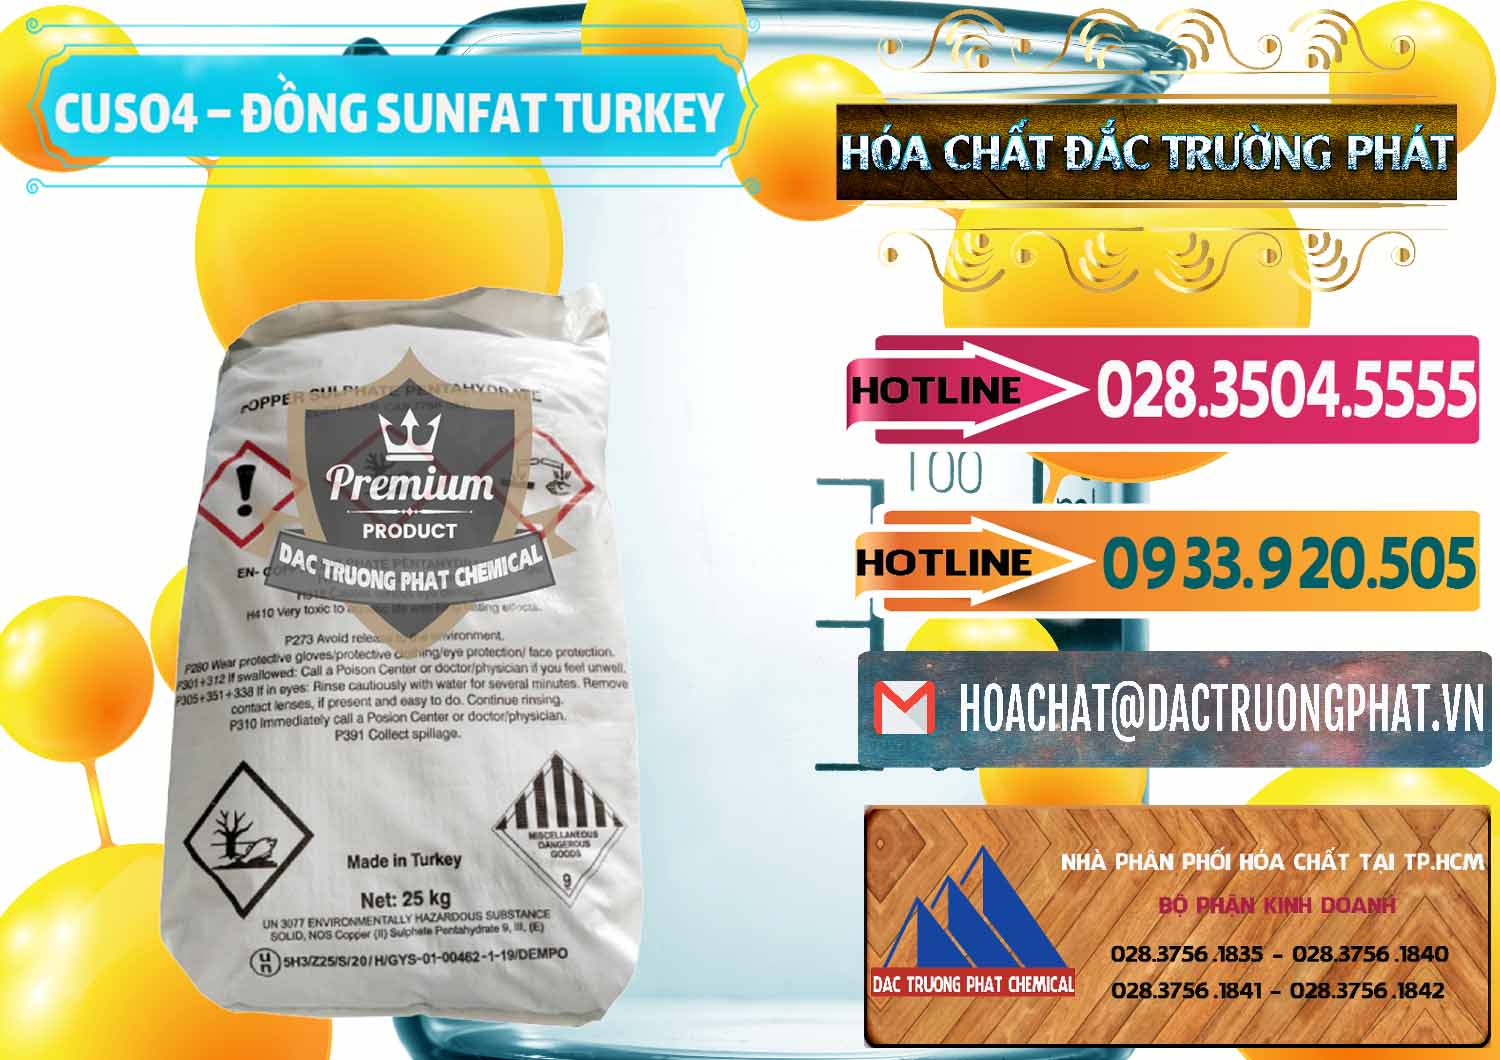 Nhà phân phối _ bán CuSO4 – Đồng Sunfat Thổ Nhĩ Kỳ Turkey - 0481 - Công ty phân phối - cung cấp hóa chất tại TP.HCM - dactruongphat.vn